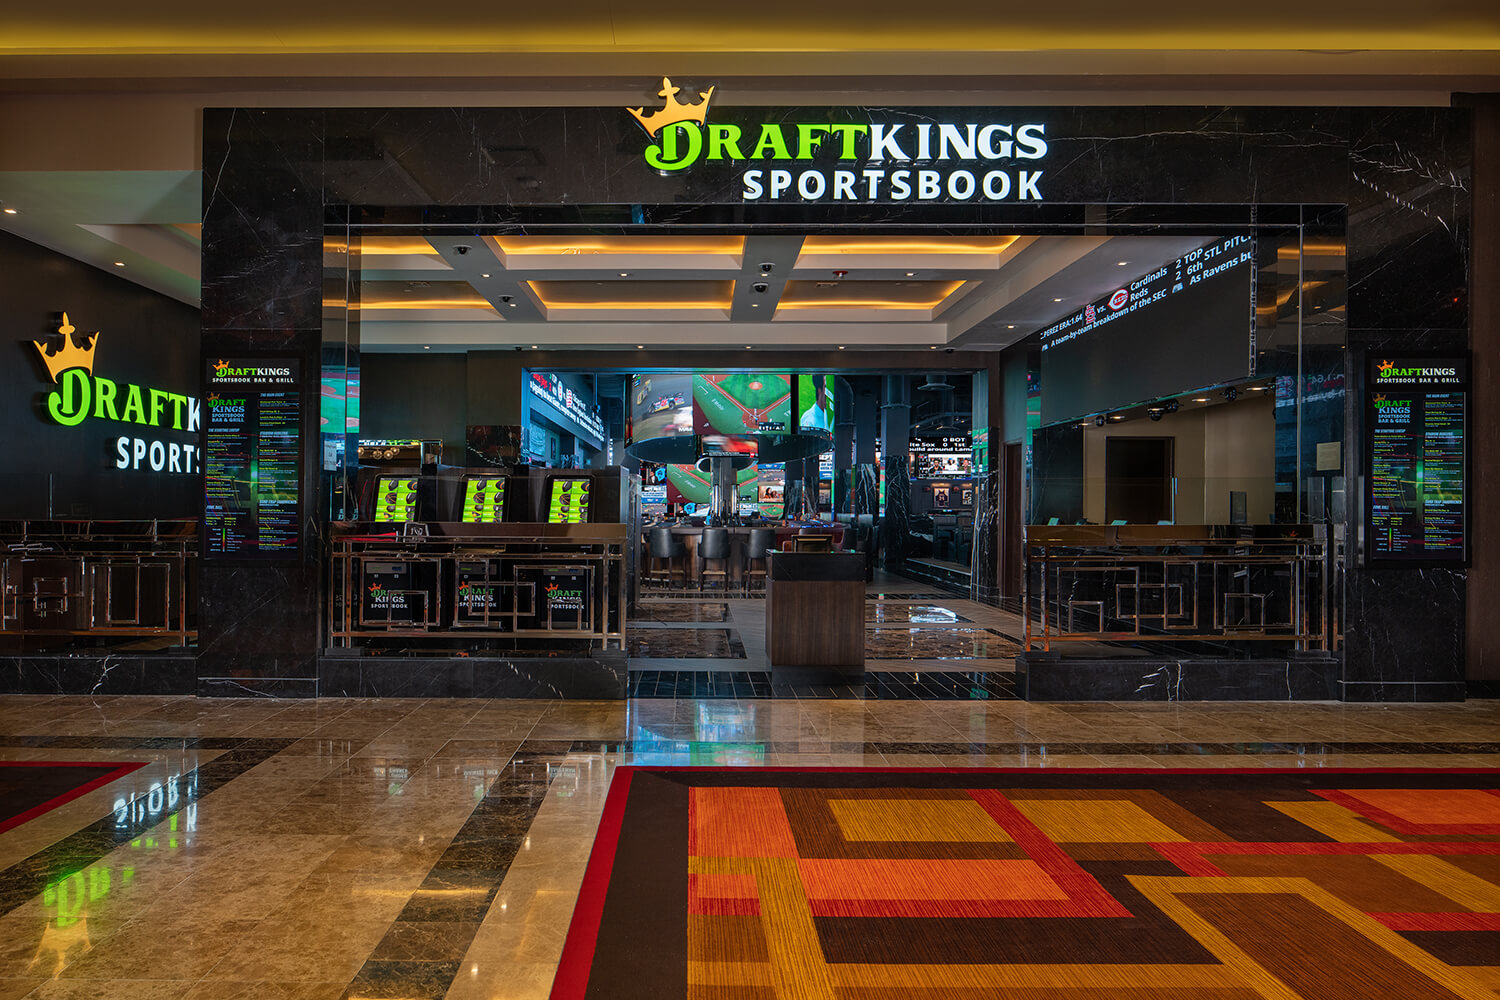 DraftKings Sportsbook Bar & Grill – Tilman J. Fertitta